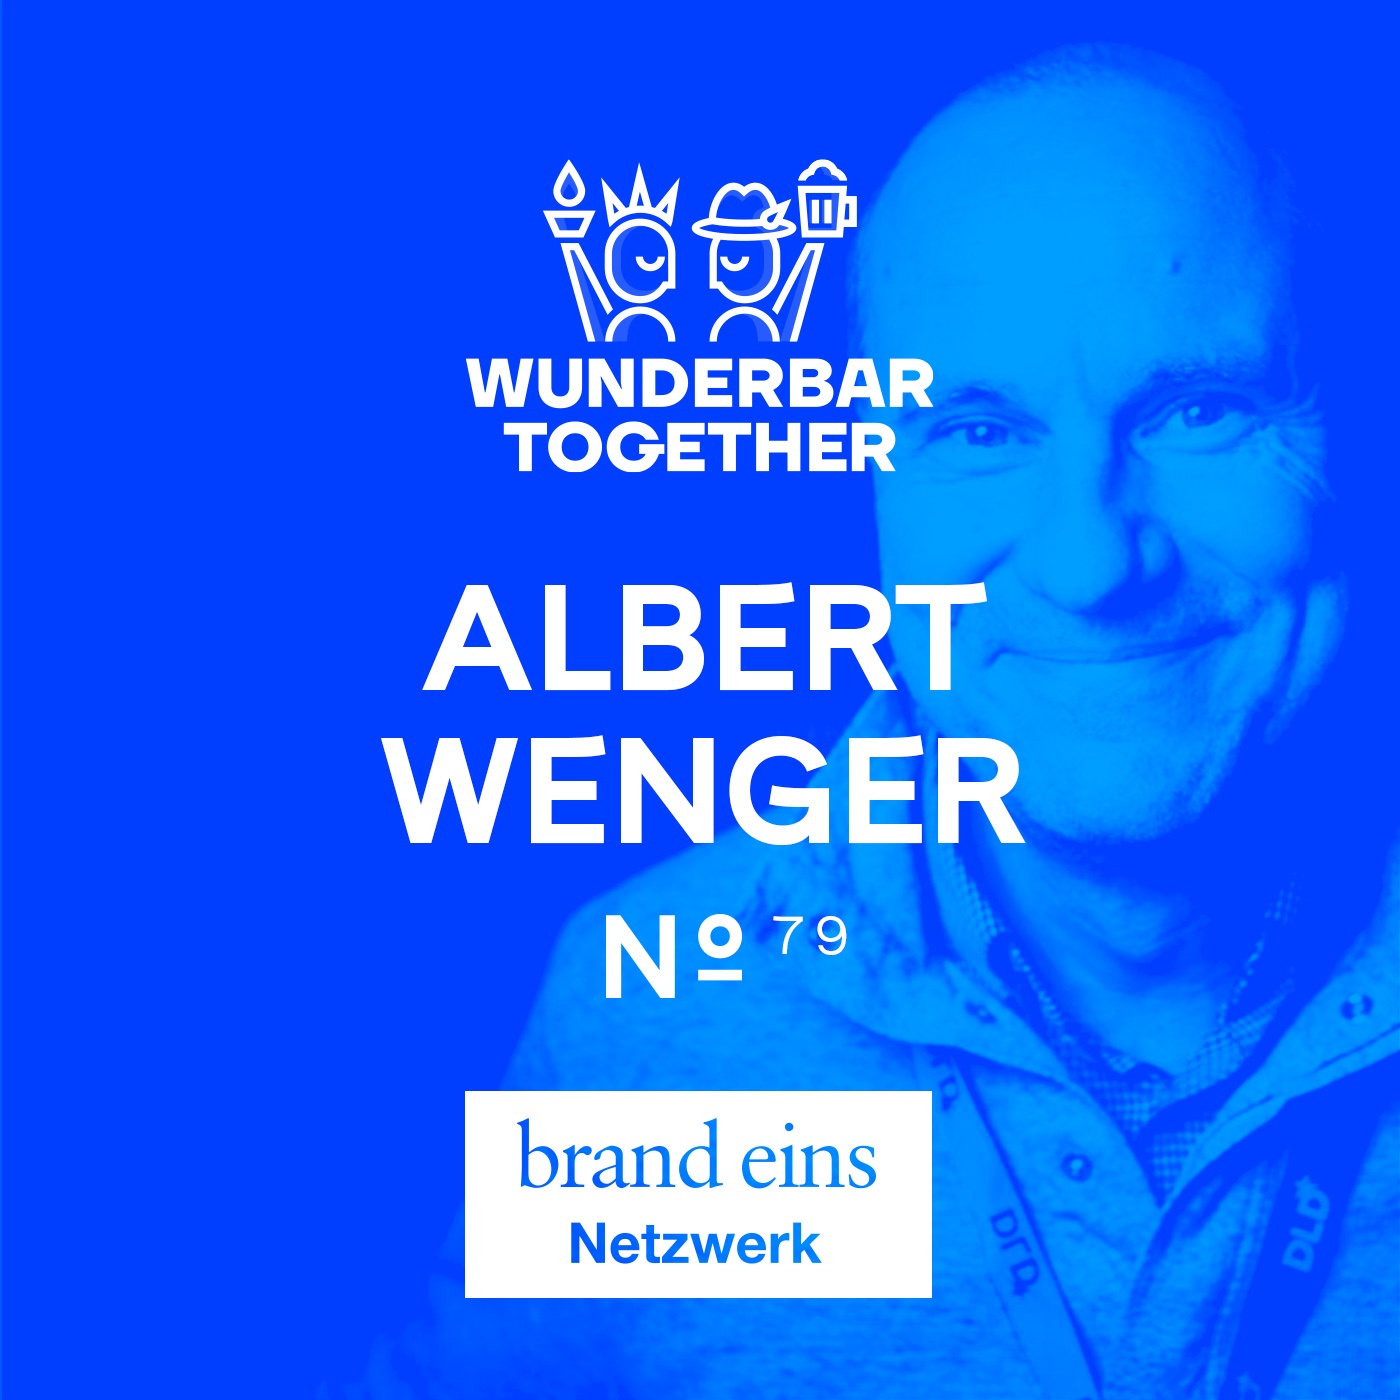 Warum brauchen wir neue Wege des Wirtschaftens, Albert Wenger? (DLD 24-Spezial)